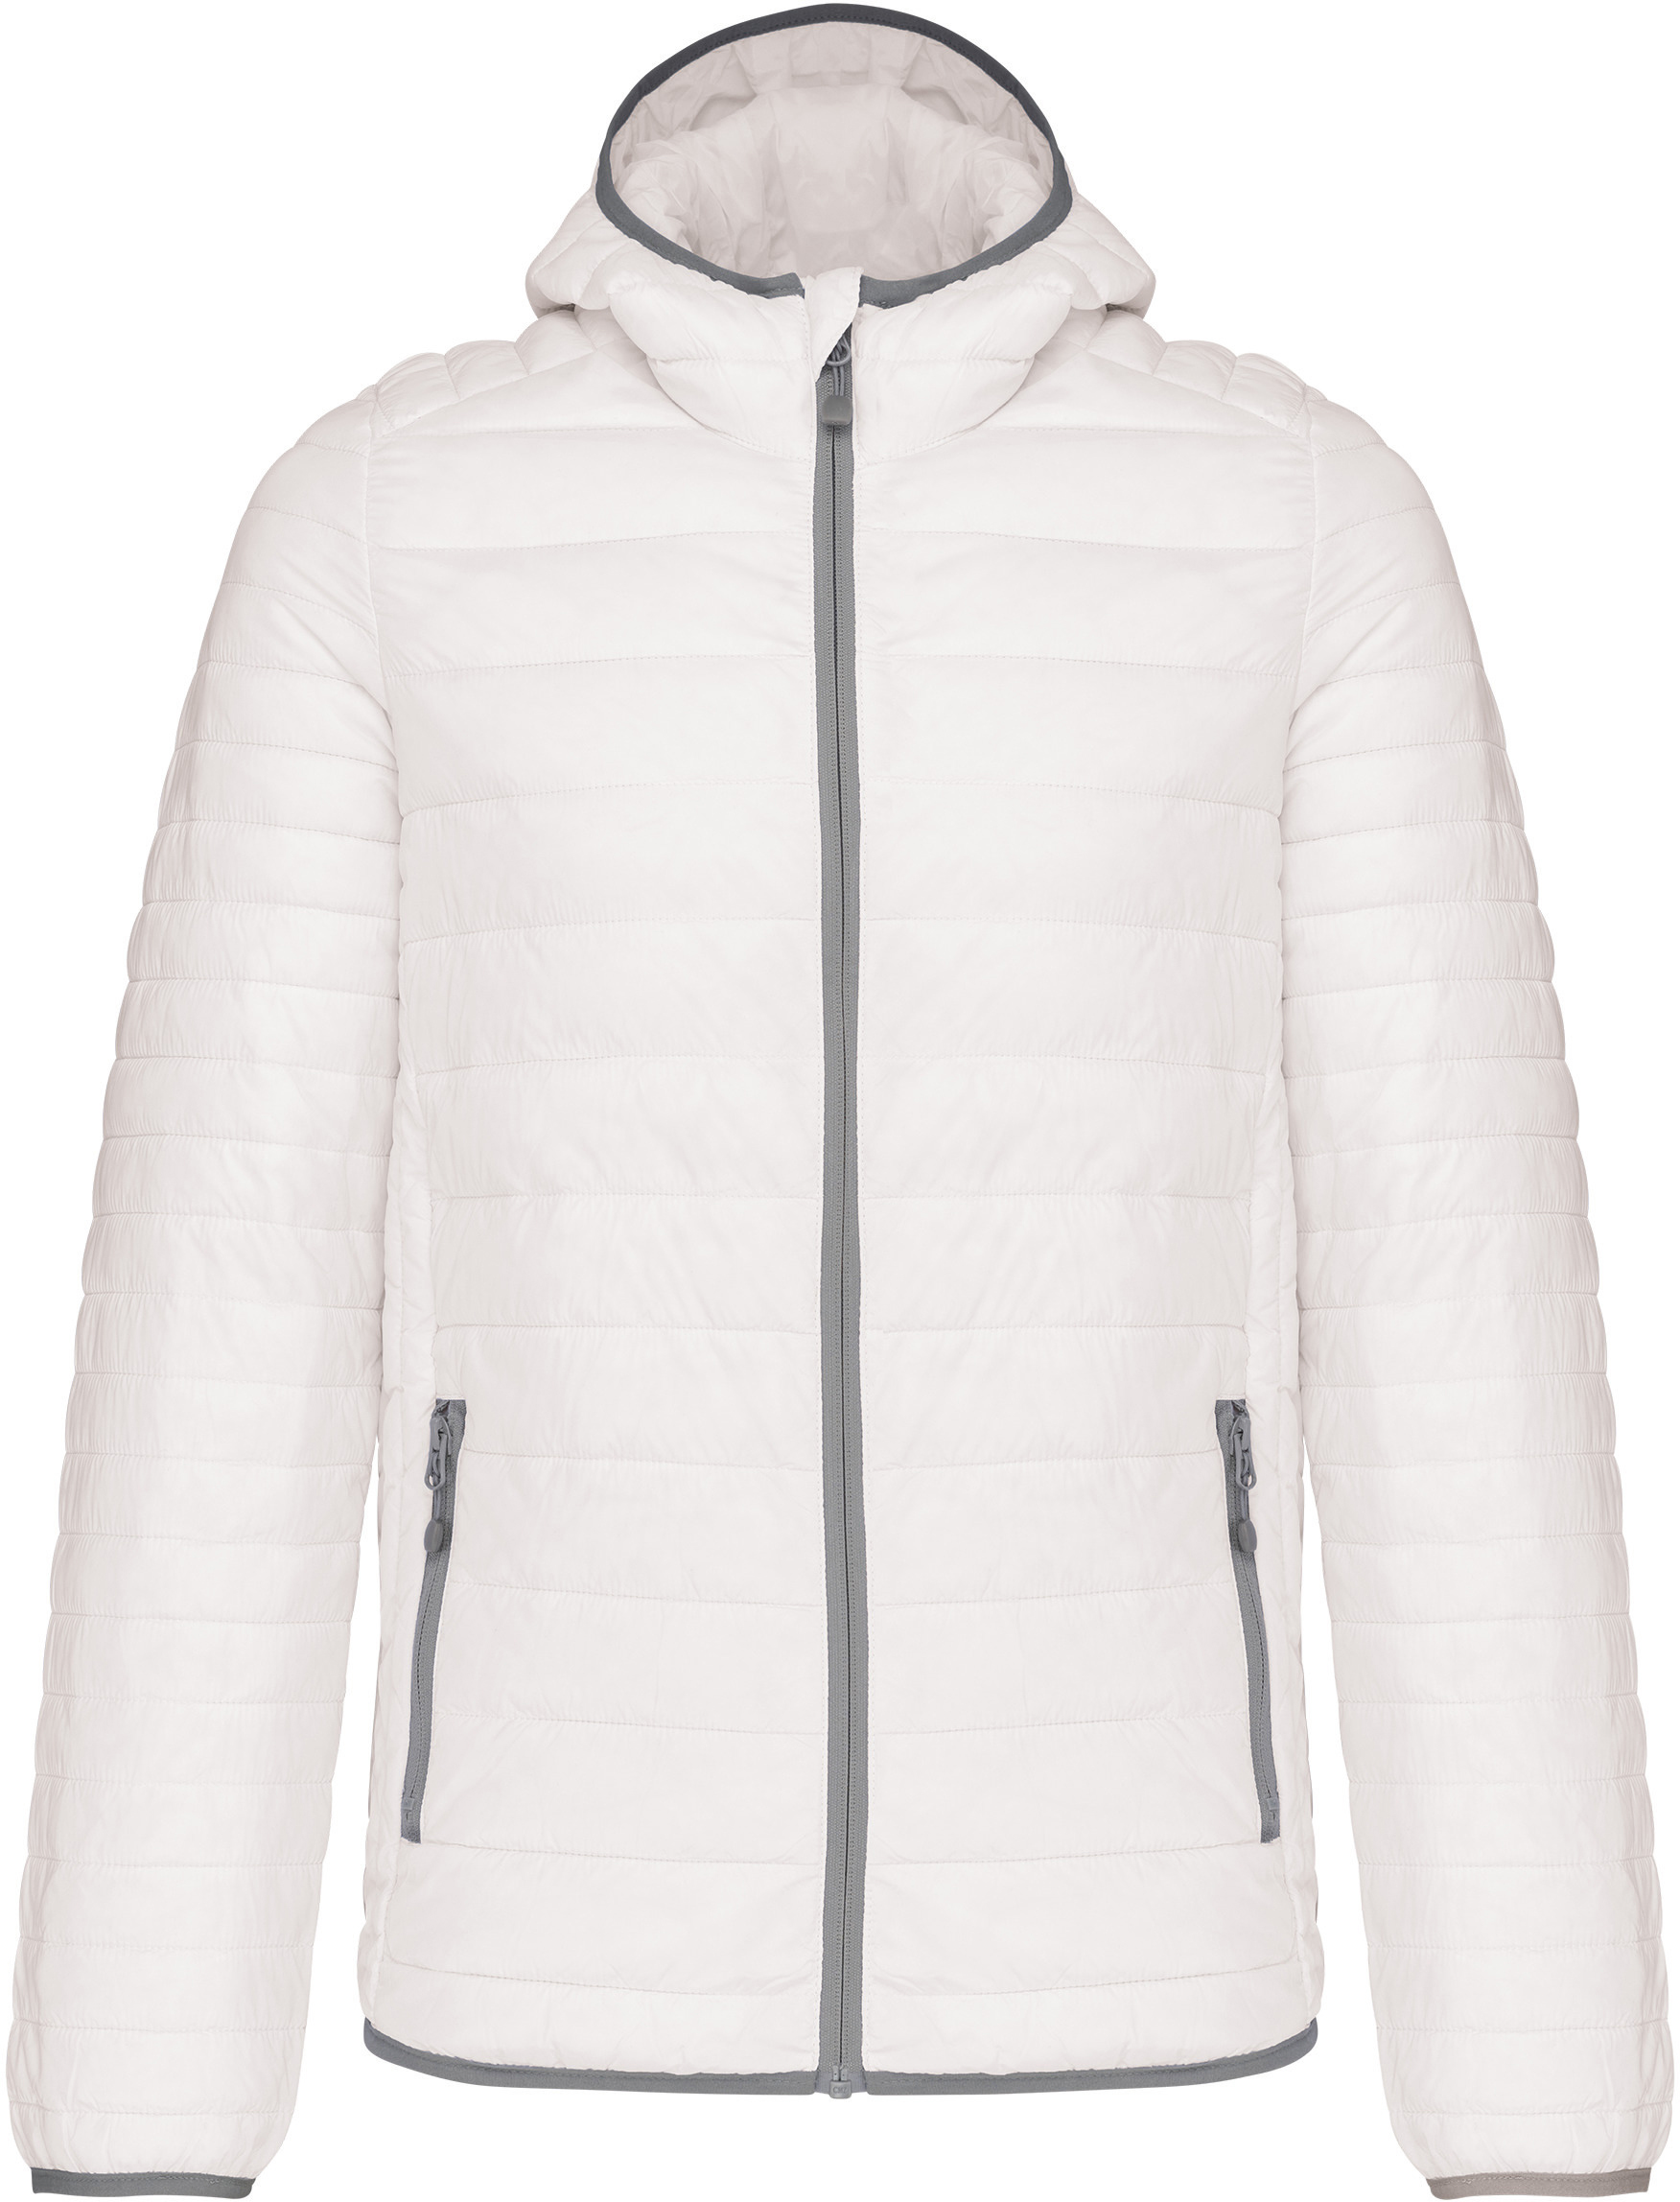 Pánská lehká zateplená bunda Down Jacket K6110 Barva: bílá, Velikost: XL